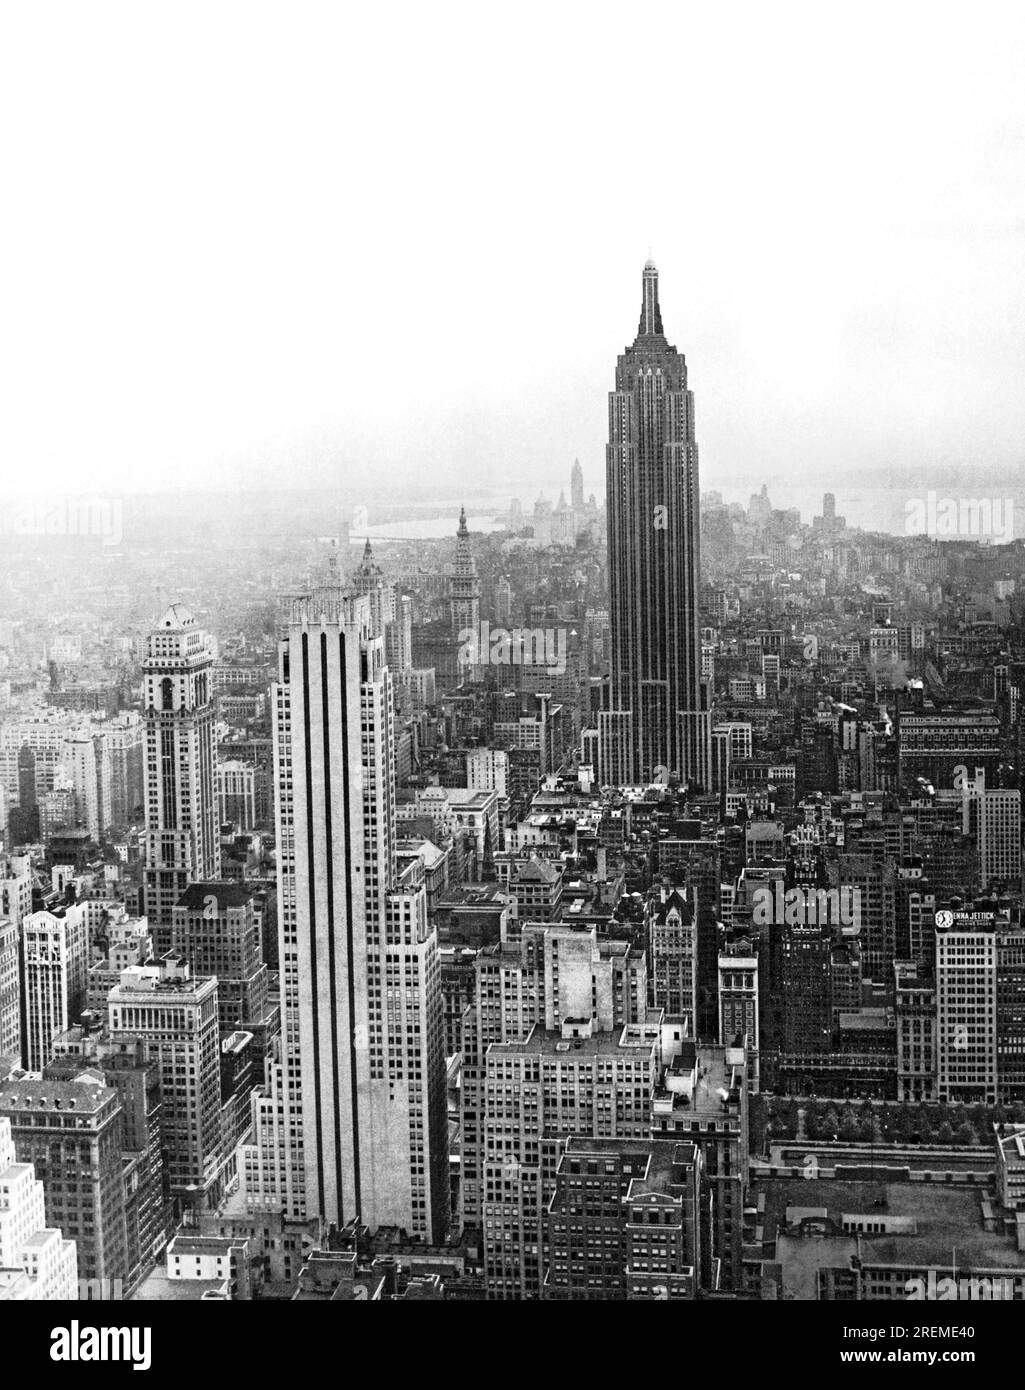 New York, New York : c. 1939 le plus haut bâtiment du monde, l'Empire State Building, domine le centre-ville de Manhattan. Achevé en 1932, le bâtiment conservera son statut de plus haut bâtiment du monde jusqu'à la construction des World Trade Centers en 1972 Banque D'Images